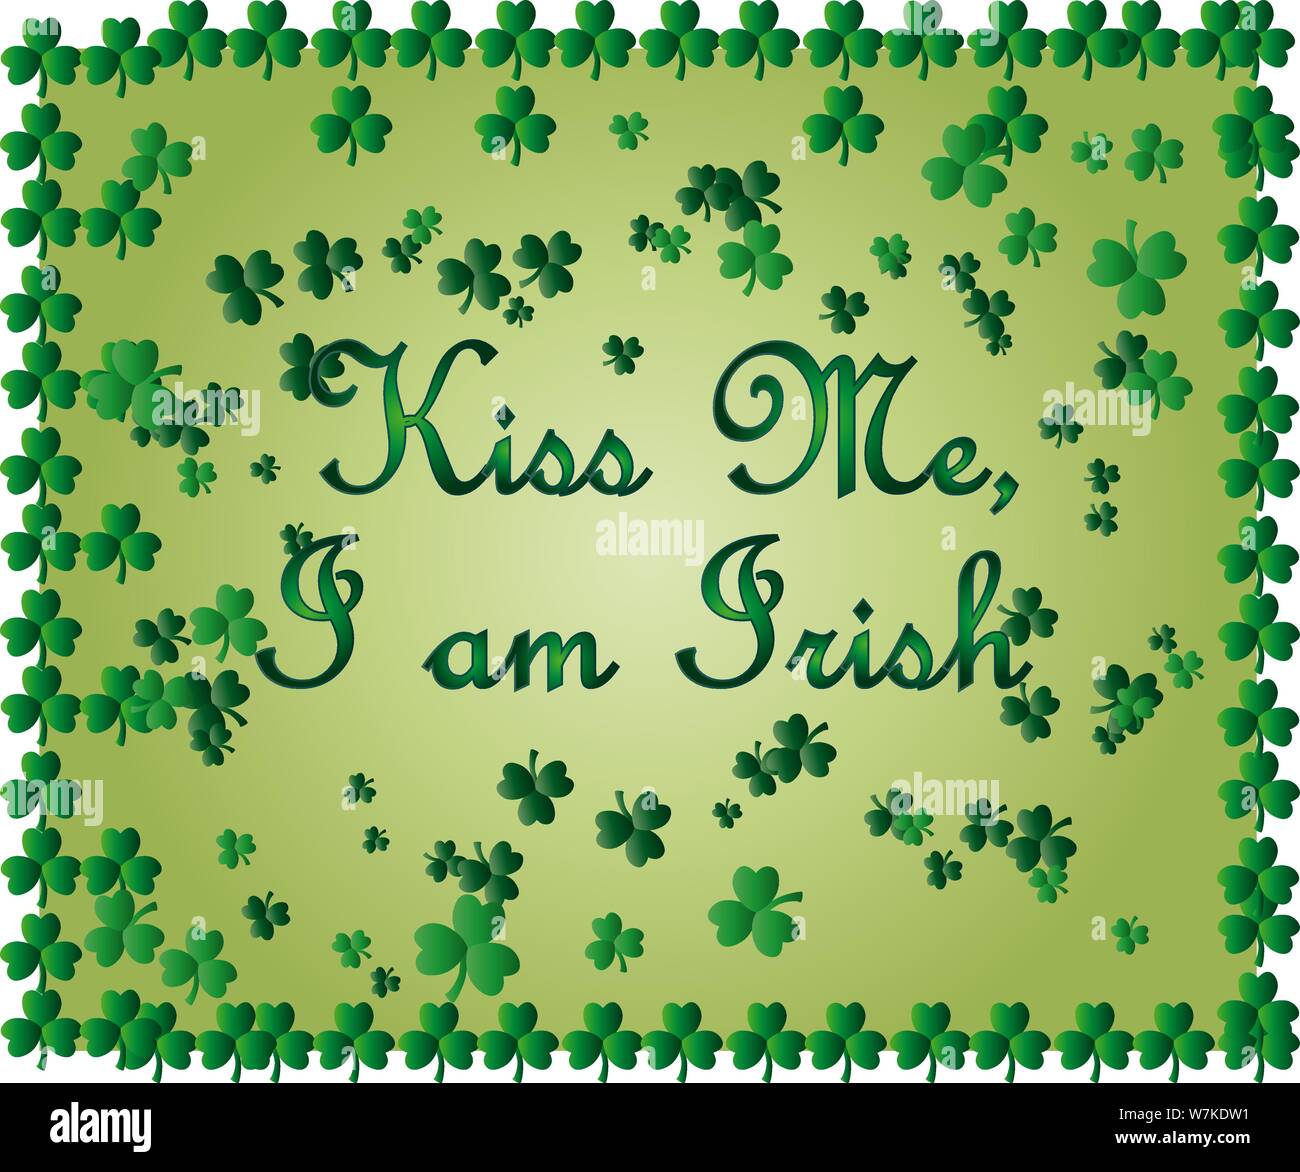 Saint Patrick's Day Greeting card avec les feuilles de trèfle vert étincelaient et texte. Inscription - embrasse-moi, je suis Irlandais Illustration de Vecteur